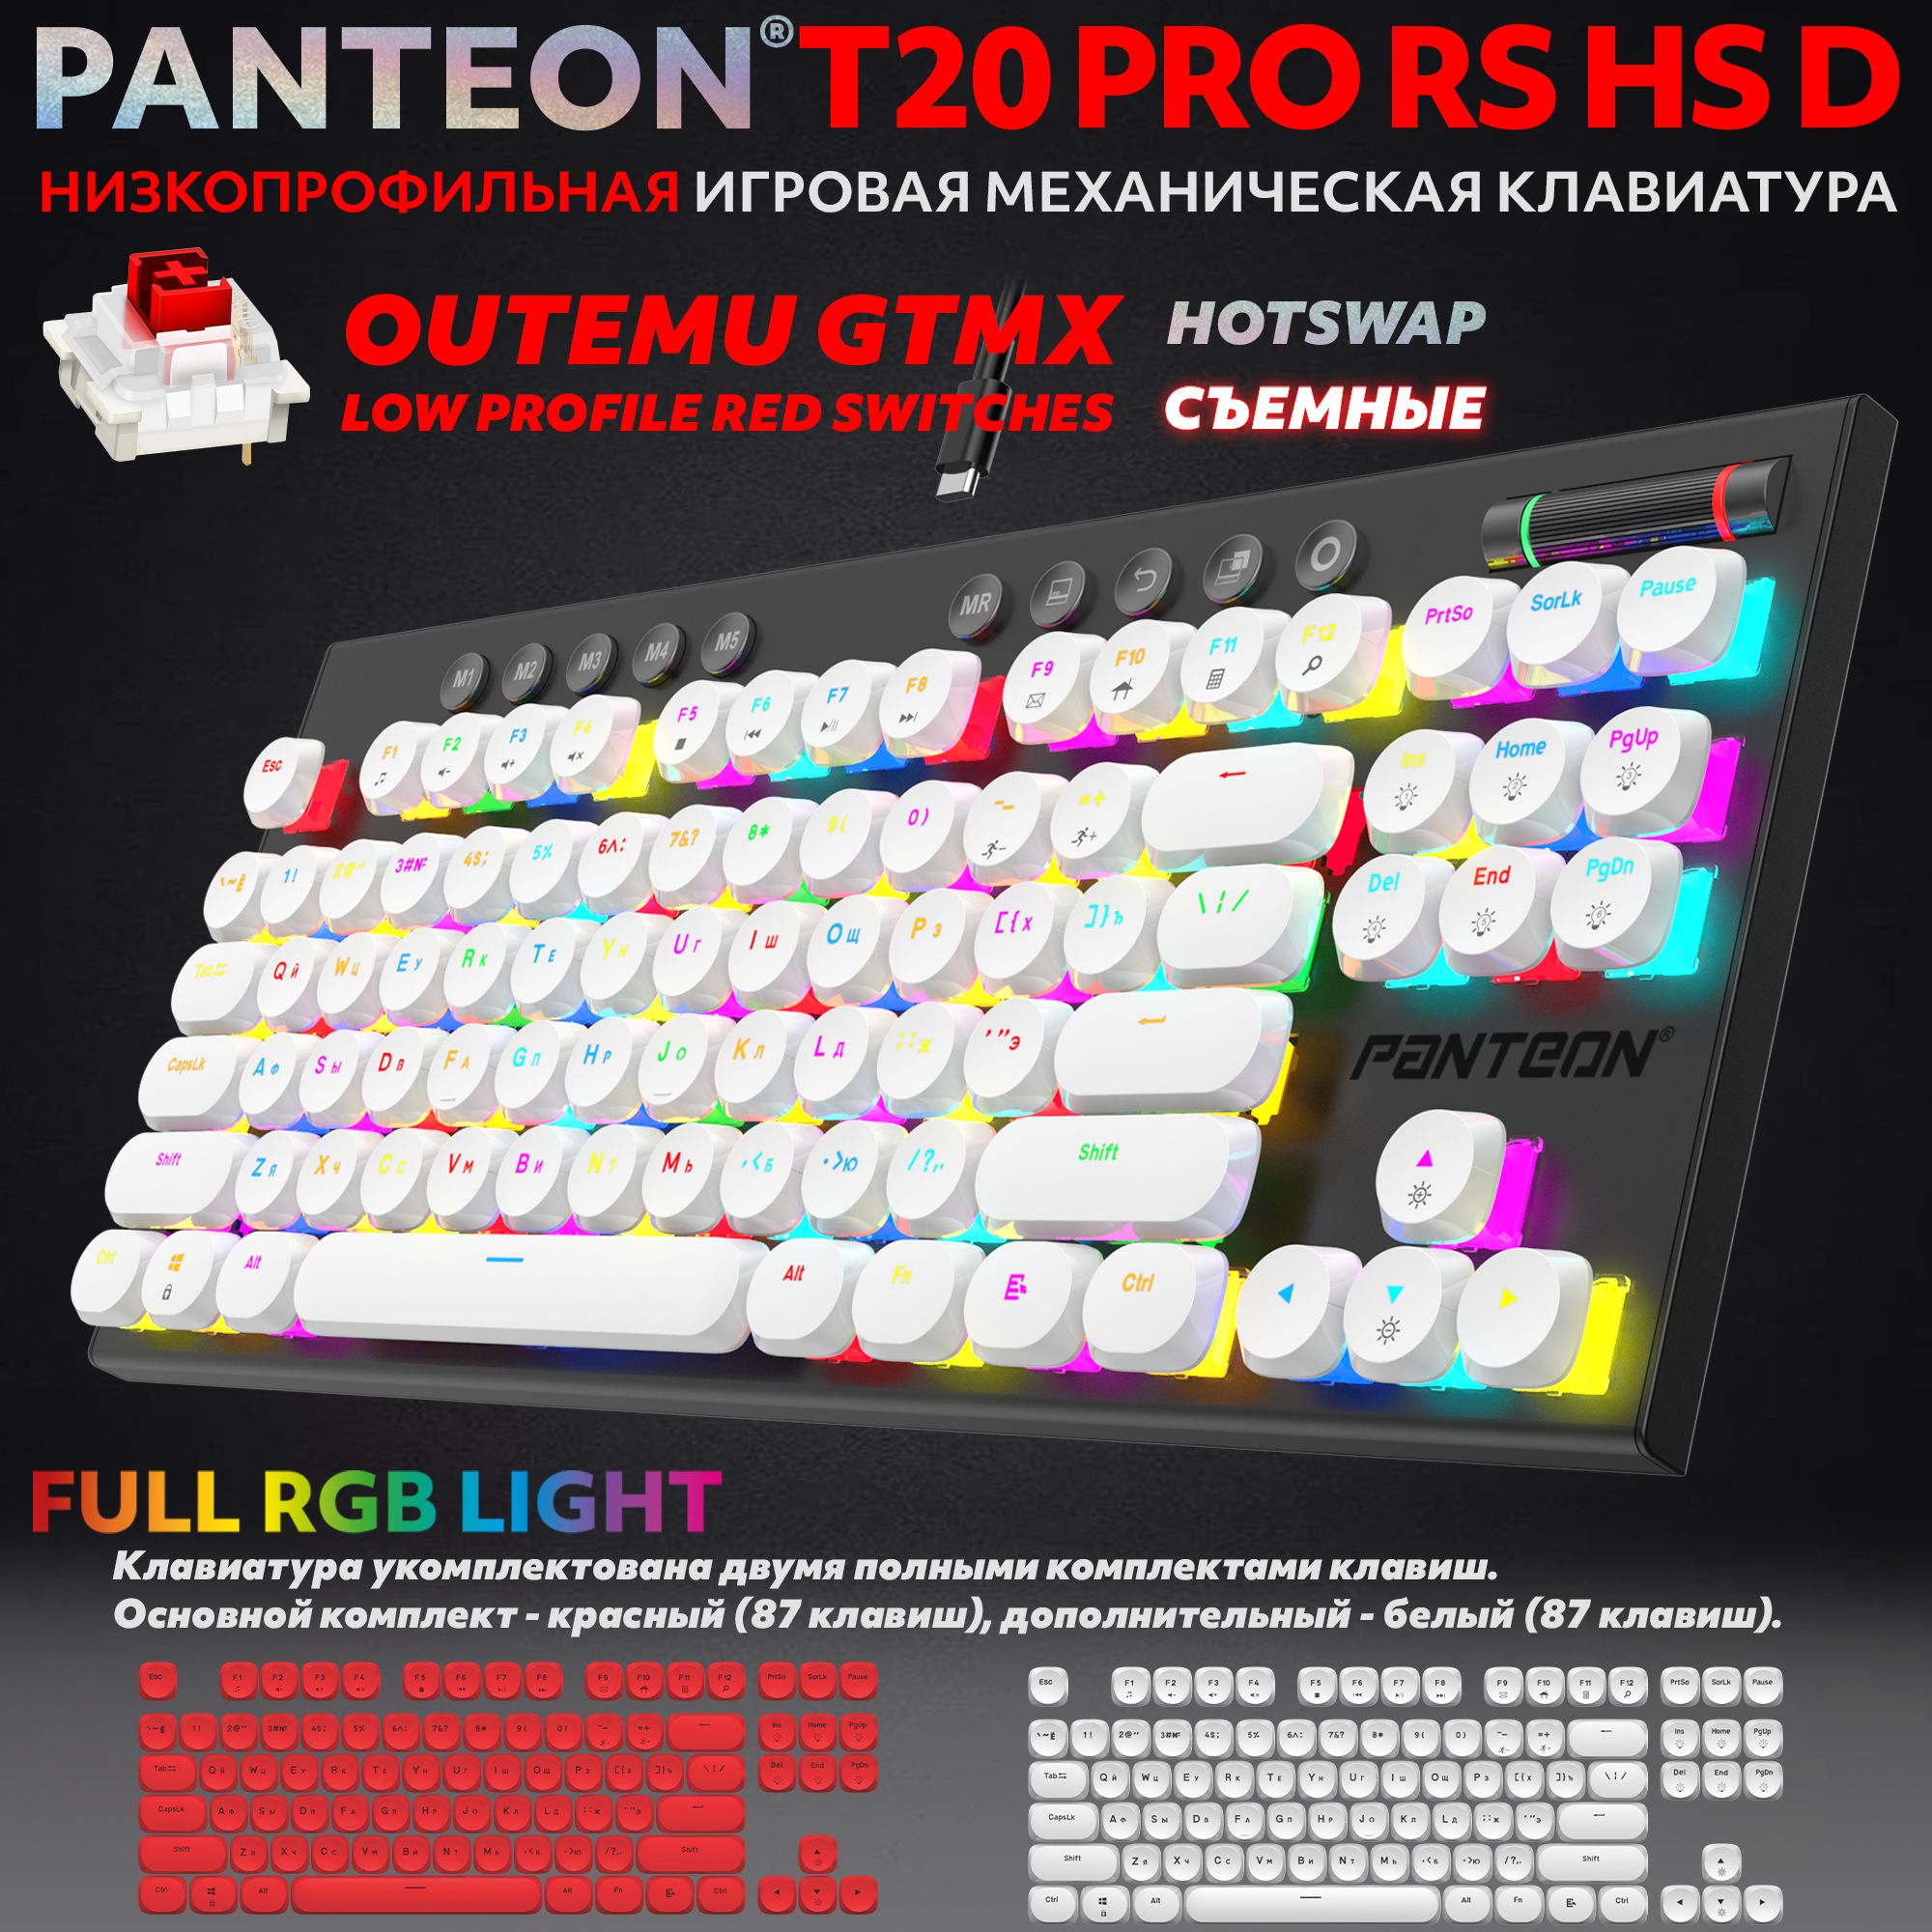 PANTEONT20PRORSHSDWhite-Red(52)Механическаяигроваяклавиатура(TKL80%,подсветкаLEDRGB,OutemuGTMXLOWPROFILERed,87+11кл,HotSwap,2полныхнабораколпачковвкомплекте,USB),цвет:белый-красный(52)"